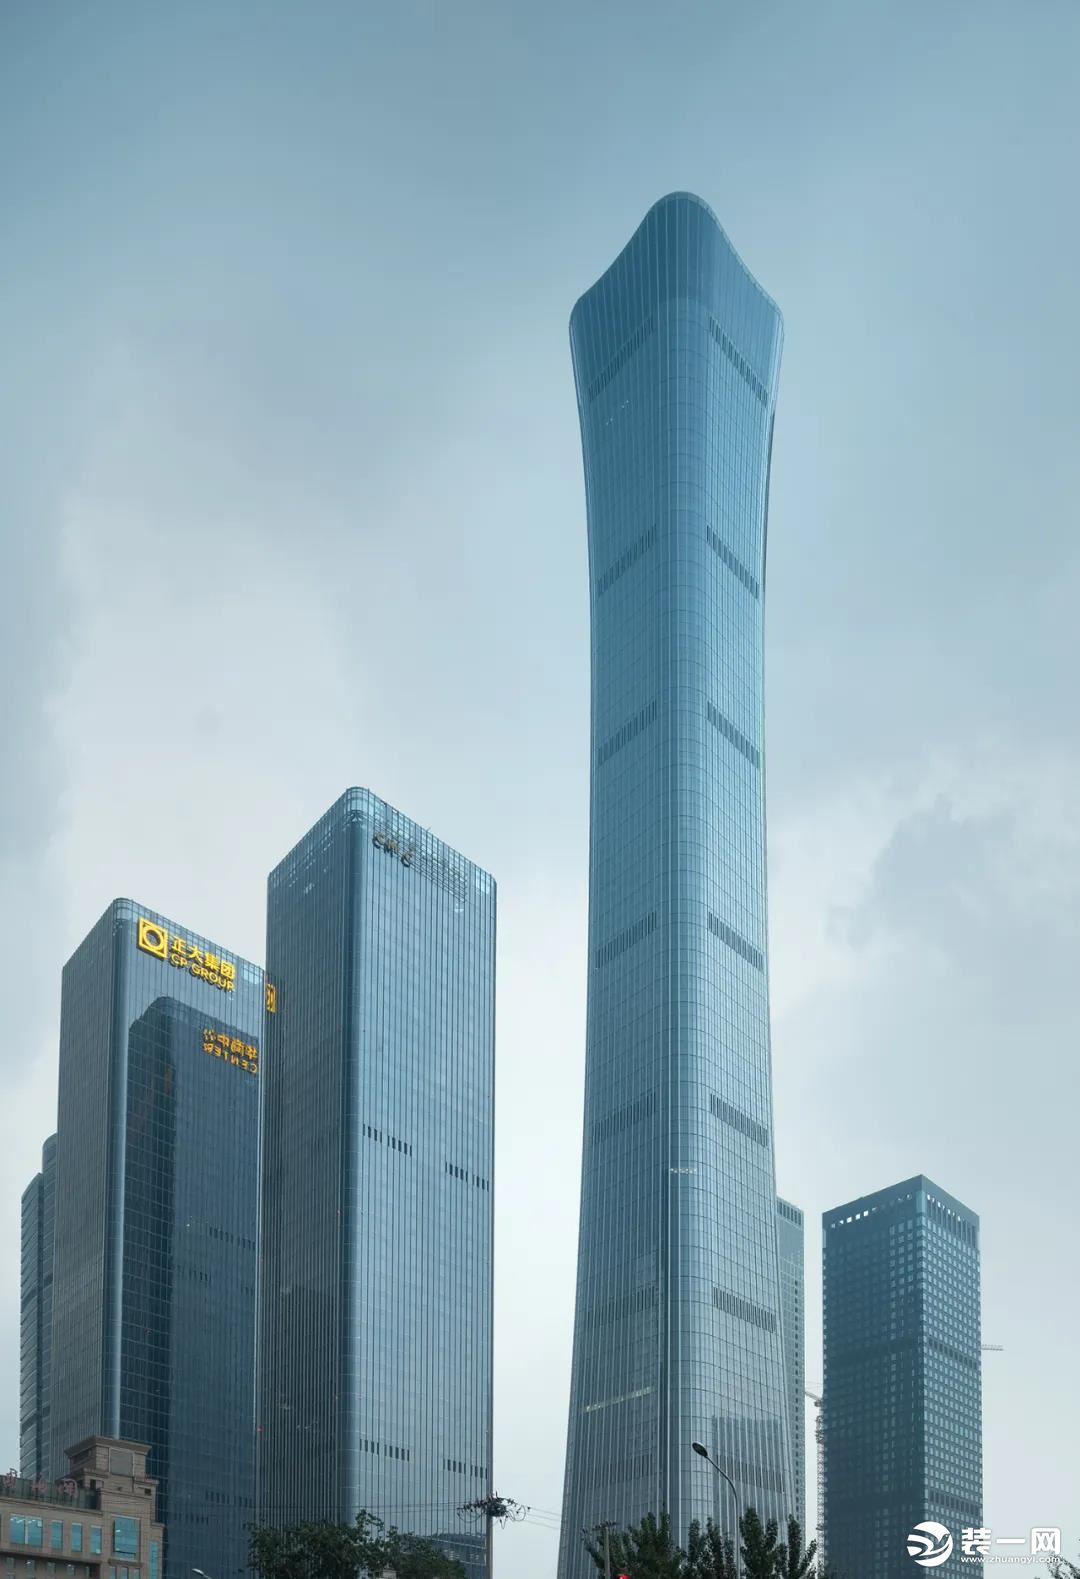  2021年中国建筑工程装饰奖金螳螂获奖作品图